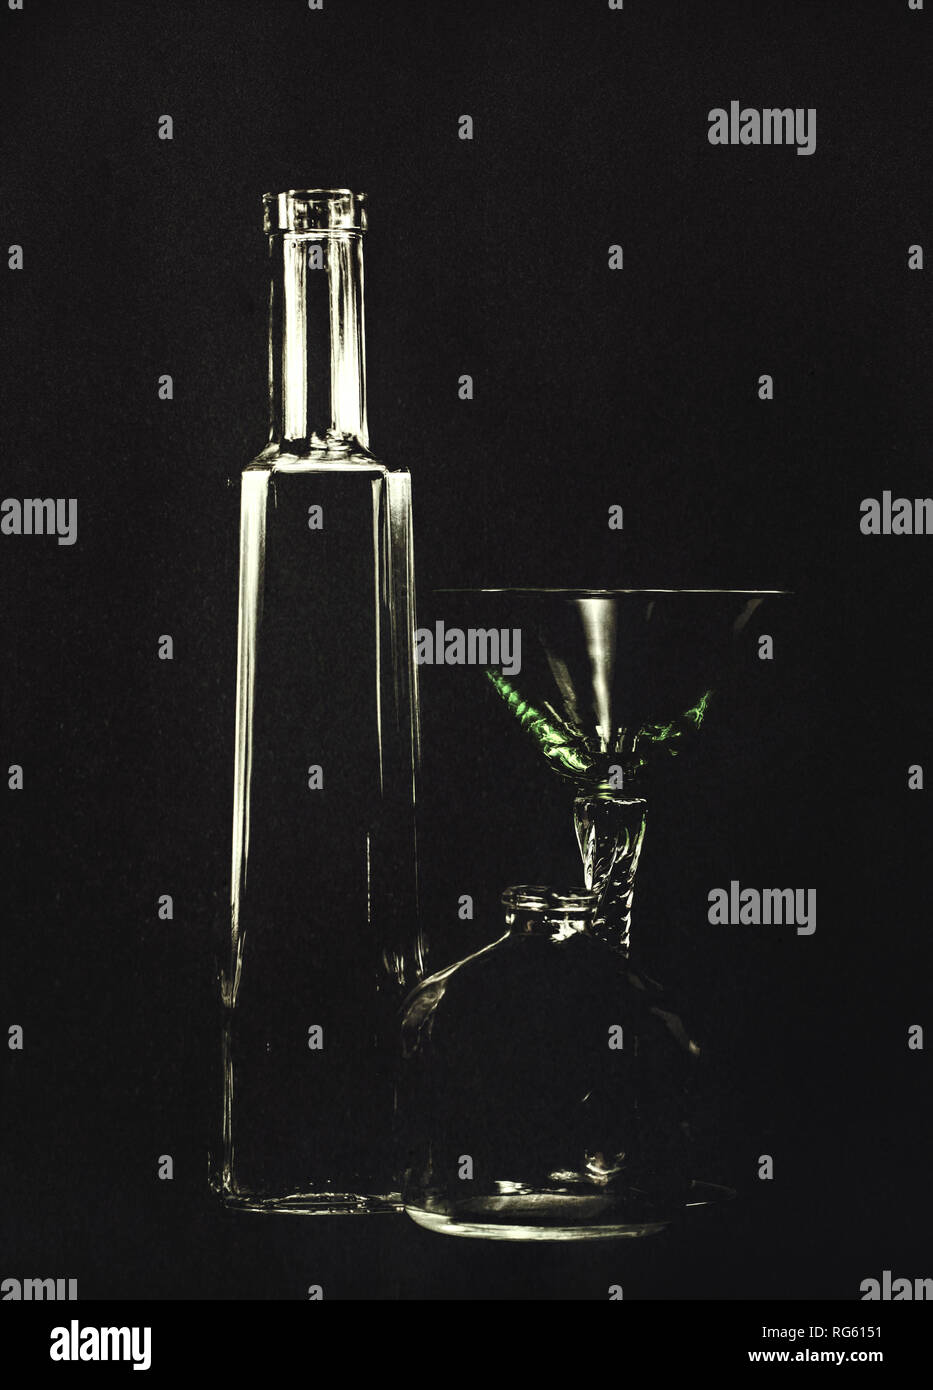 Leere Flaschen und einem Cocktail Glas, Gift, Mord Konzept. Mit einer Hintergrundbeleuchtung ausgestattet, so dass schwarzer Hintergrund, künstlerischen Textur angewendet. Stockfoto